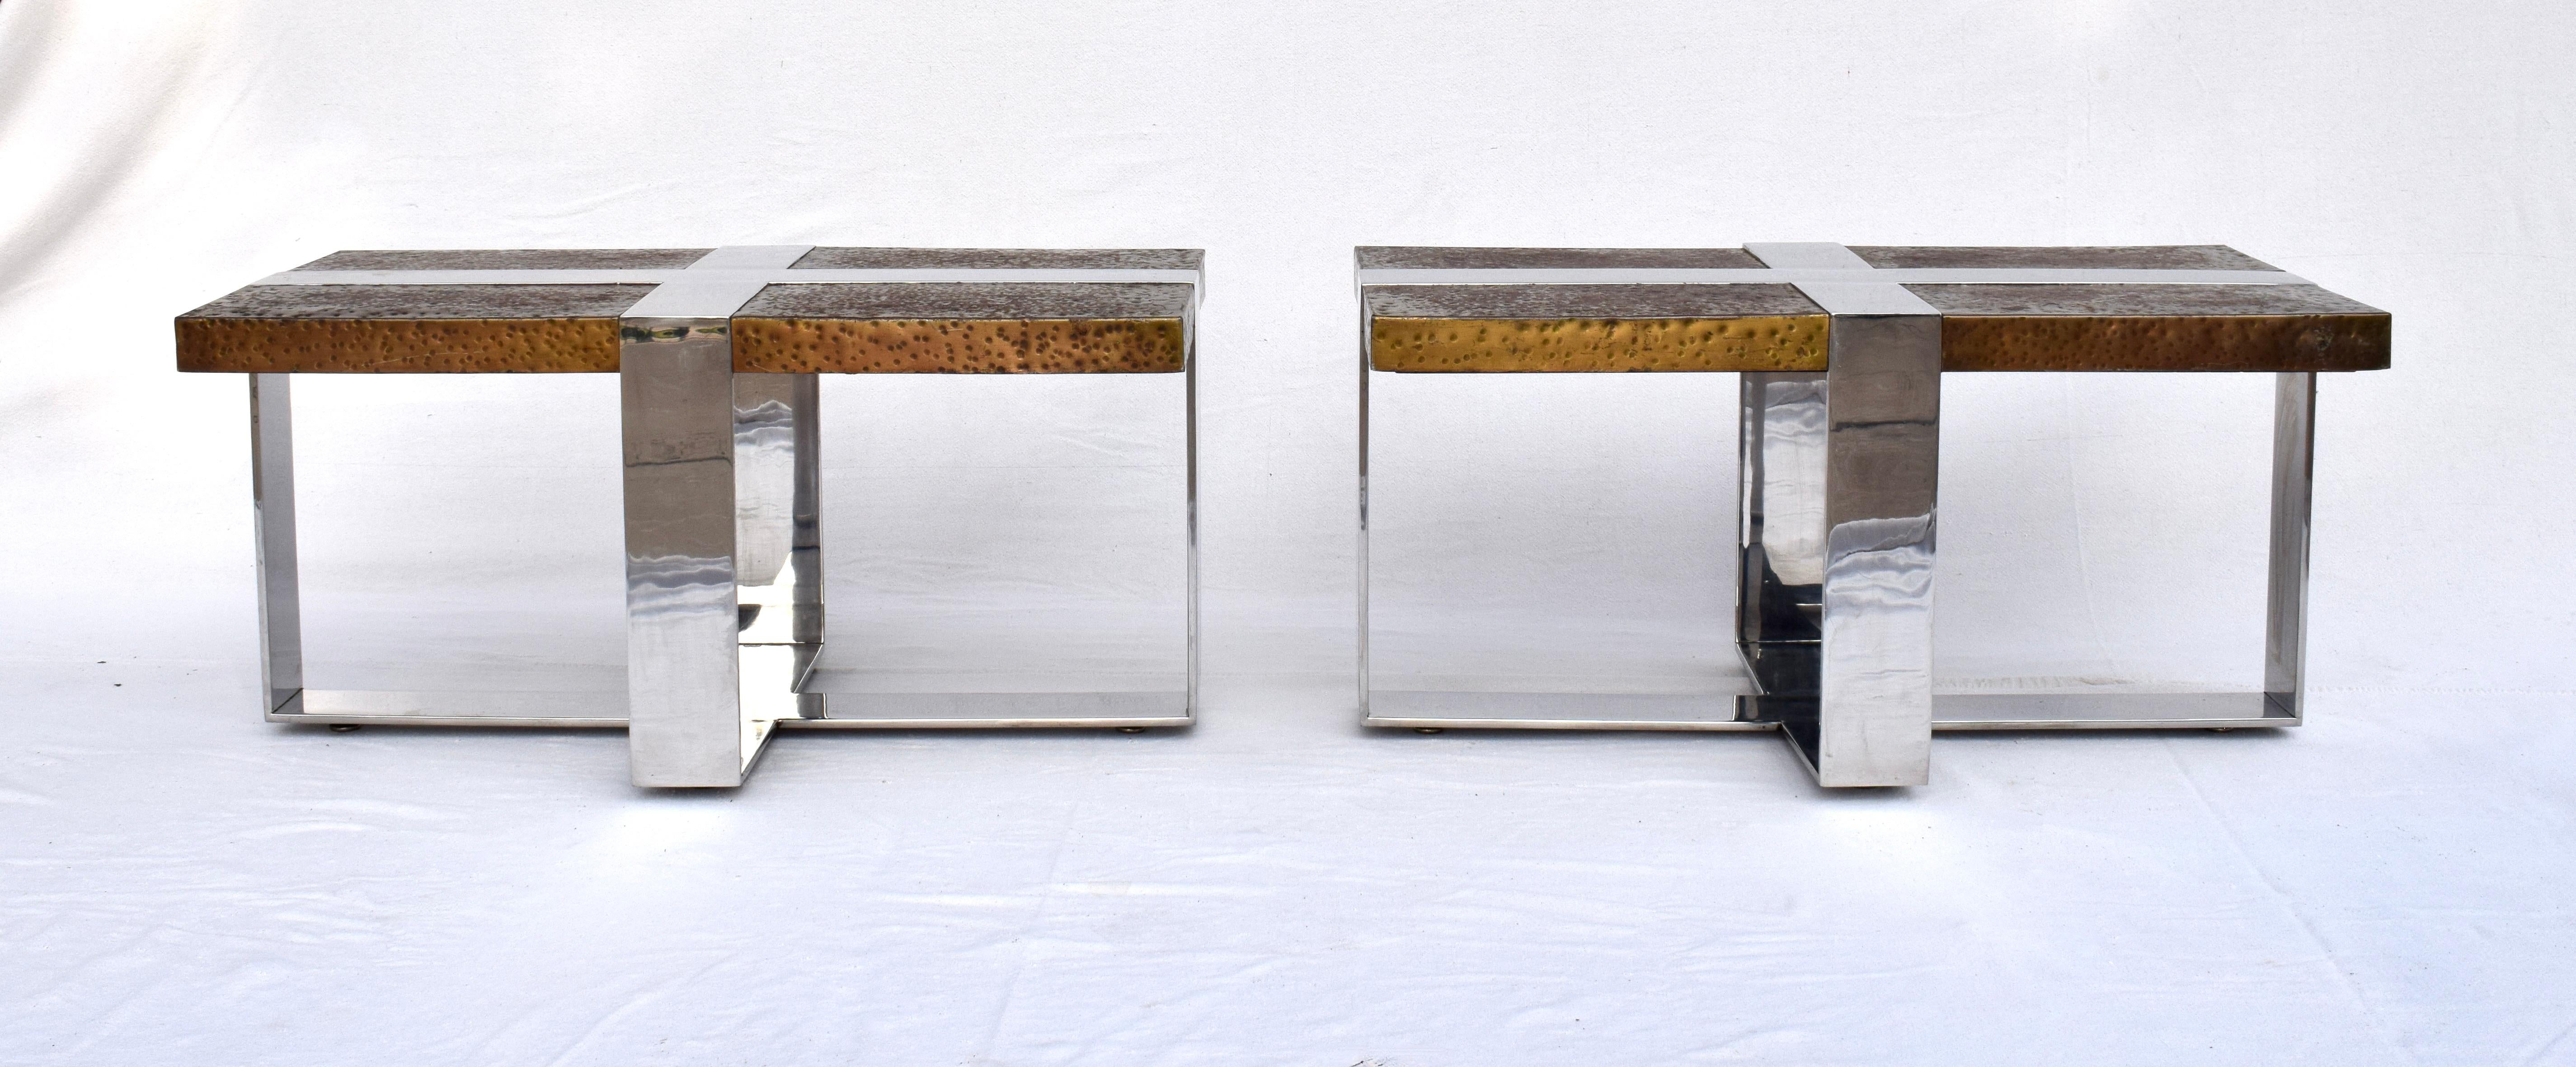 Einzigartiges Paar rechteckiger Tische im Vintage-Stil mit verchromten kreuzförmigen Stahlrahmen und kupferumwickelten Tischplatten von solider Konstruktion, hoher Qualität und Gewicht.  Nach dem Vorbild von Milo Baughman eignet sich dieses